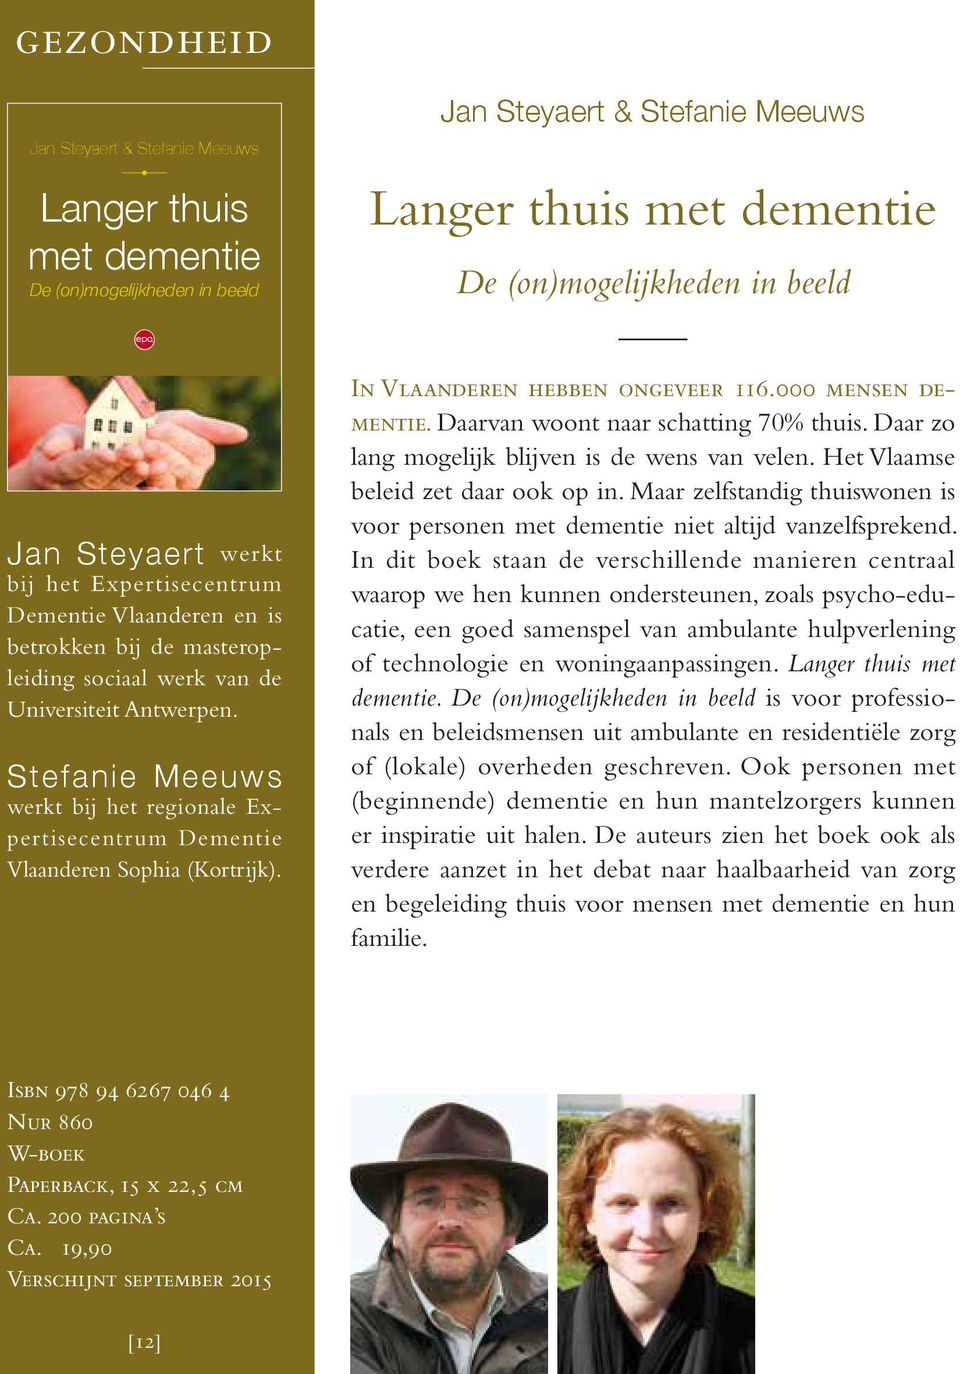 Stefanie Meeuws werkt bij het regionale Expertisecentrum Dementie Vlaanderen Sophia (Kortrijk). In Vlaanderen hebben ongeveer 116.000 mensen dementie. Daarvan woont naar schatting 70% thuis.